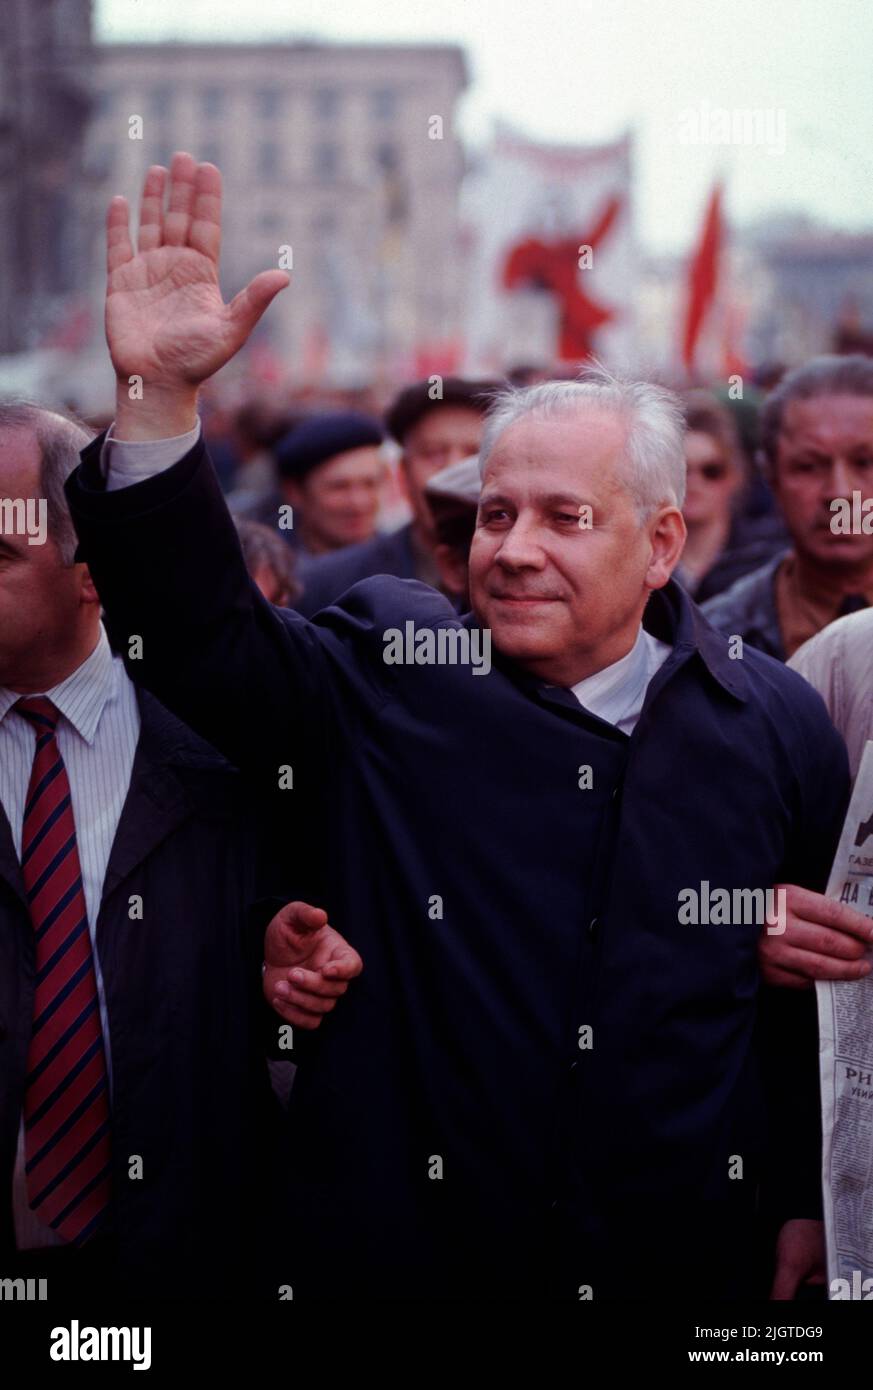 Anatoly Ivanovich Lukyanov ( Анатолий Иванович Лукьянов,1930 – 2019) Lukyanov ondeggia alla folla durante una manifestazione pro-comunista anti-Yeltsin nel centro di Mosca, Russia, aprile 1992. Dal 1990 al 1991 è stato Presidente del Soviet Supremo dell'URSS ed è stato uno dei fondatori del Partito Comunista della Federazione Russa. Foto Stock